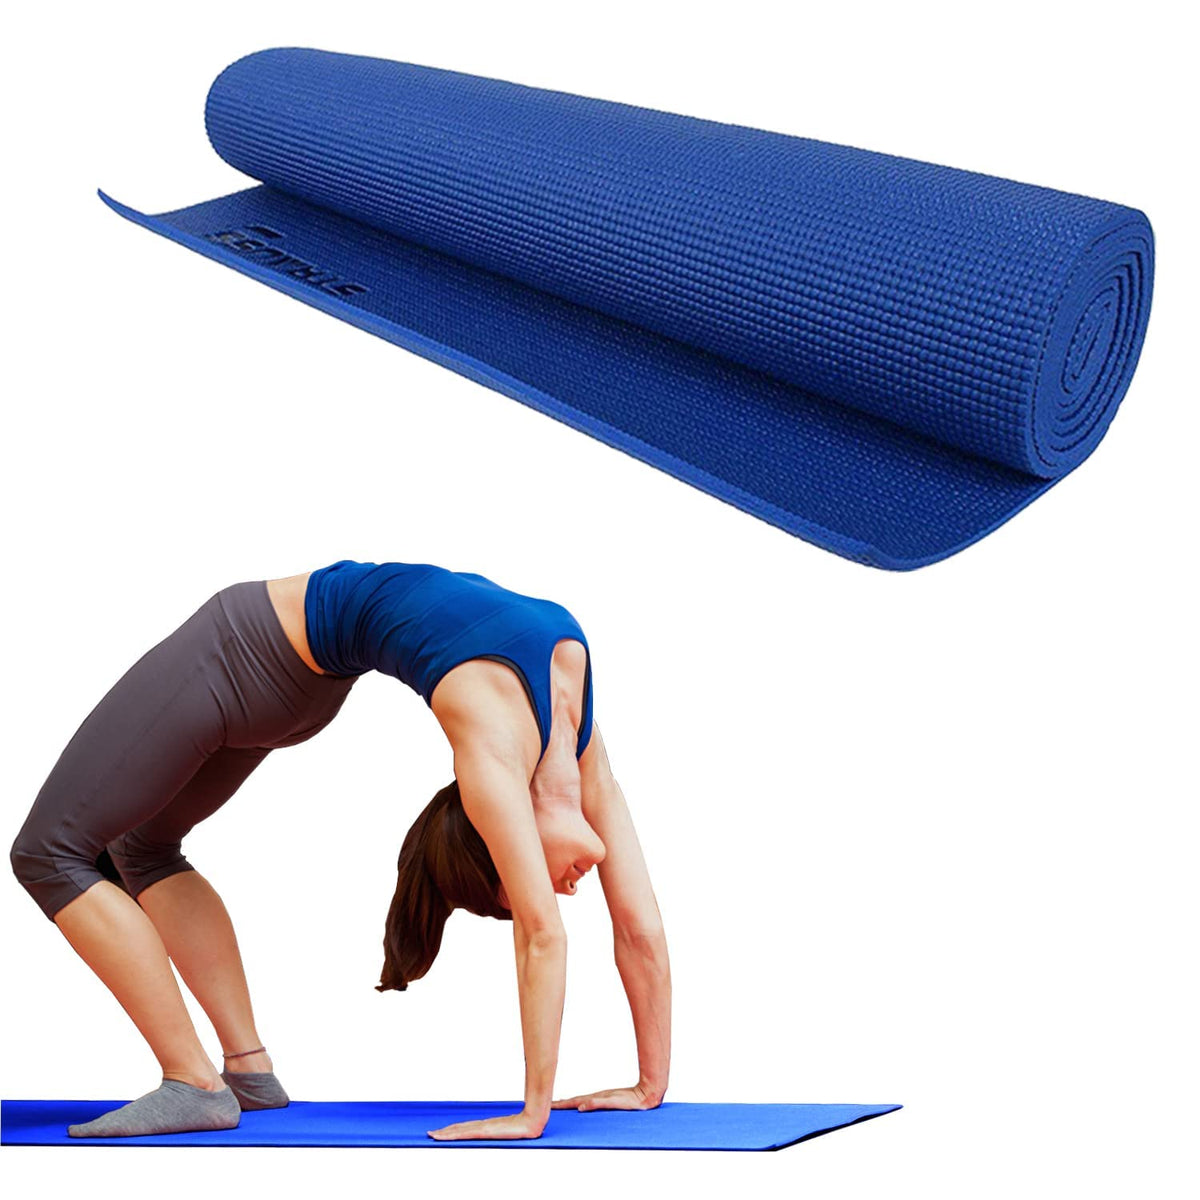 Strauss Yoga Mat, 8 mm (Blue)